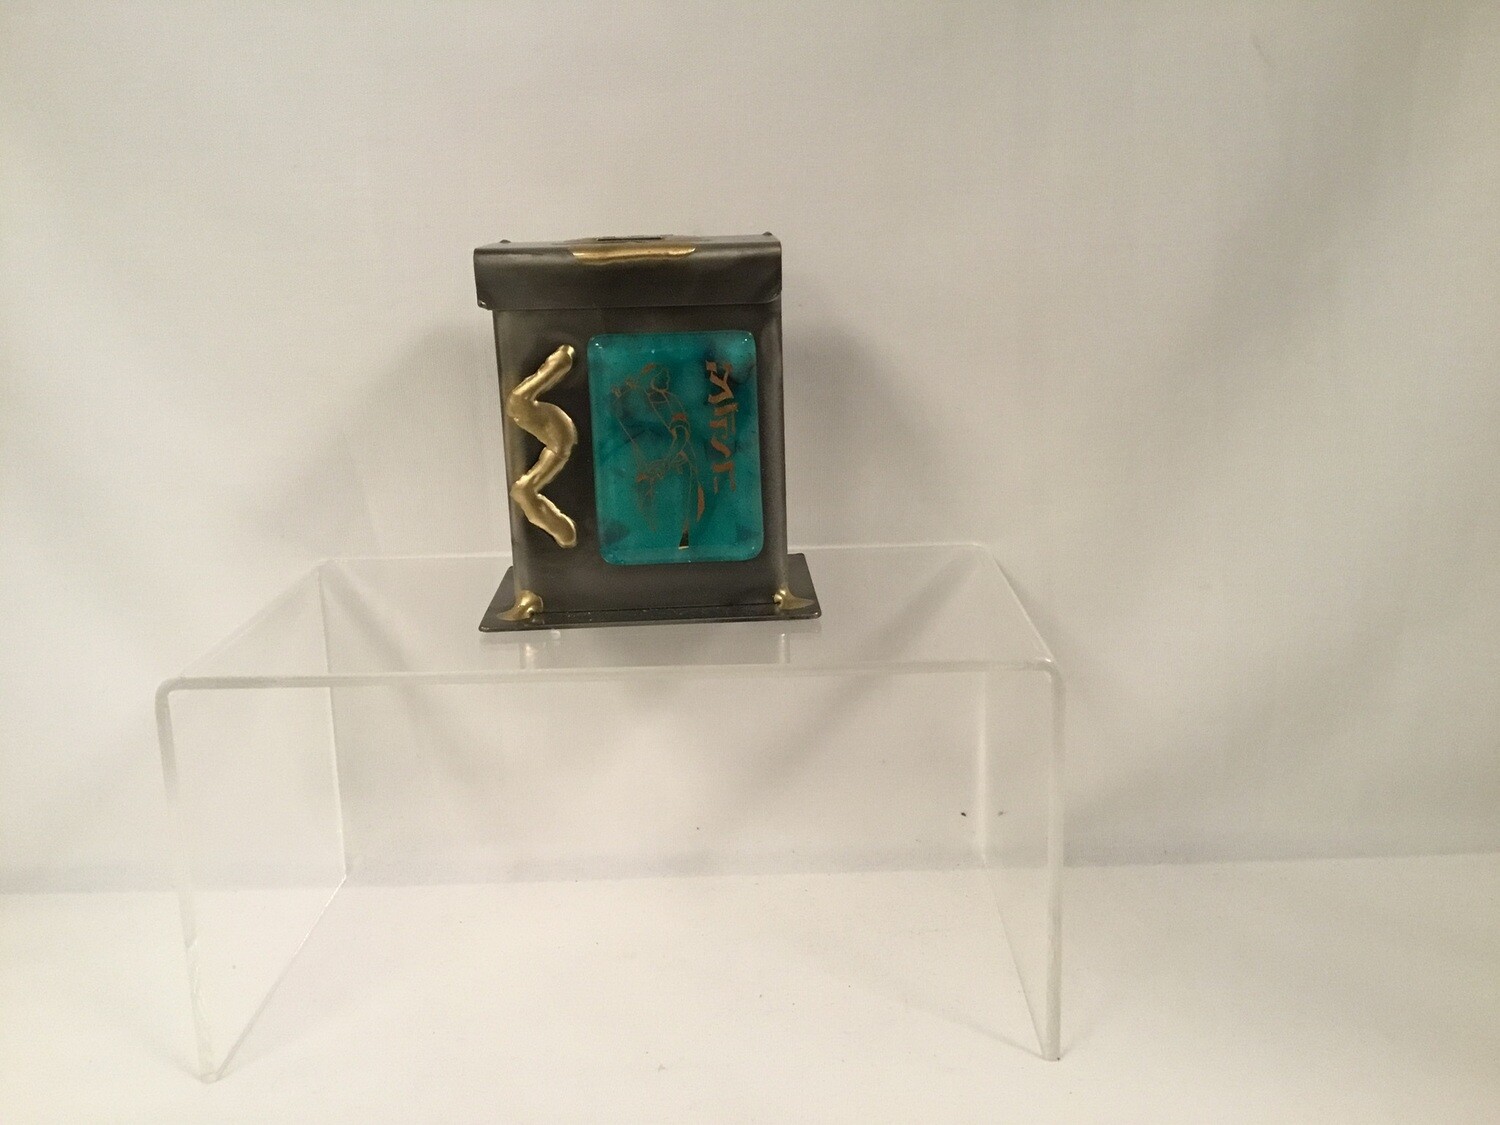 Bat Mitzvah Tzedakah Box - small